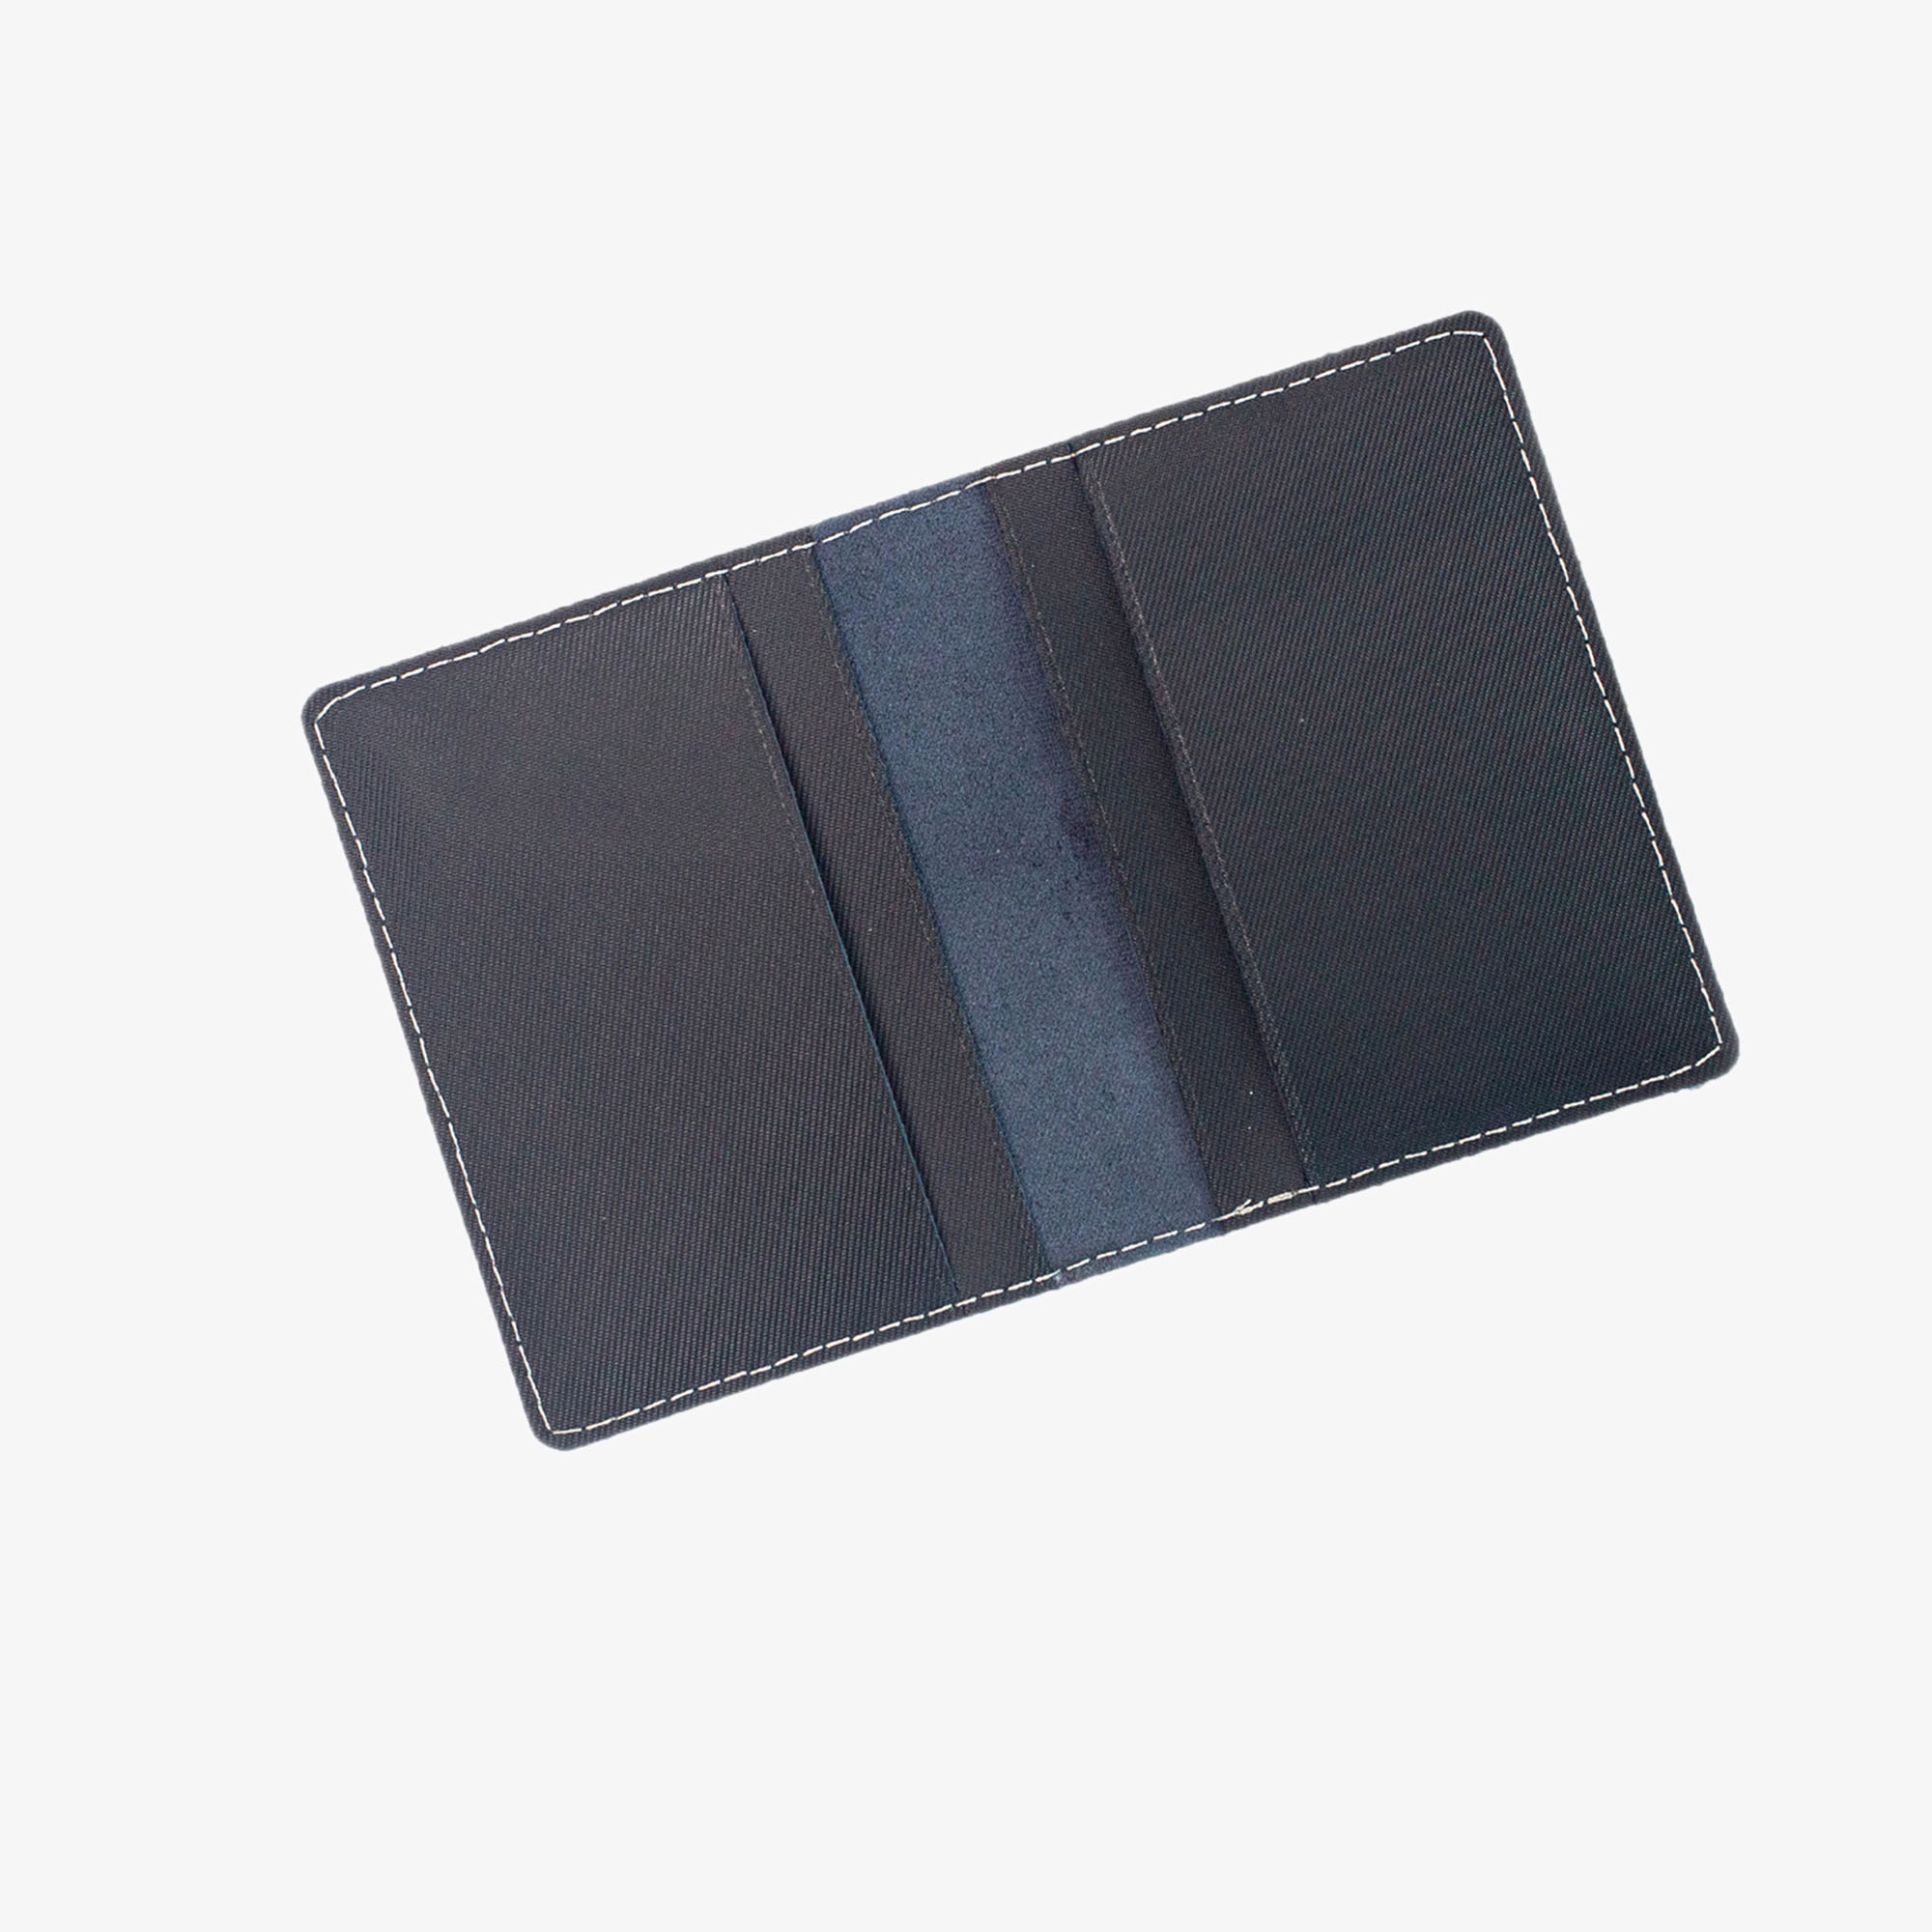 Ví namecard da bò V131, ví đựng thẻ card holder da thật nhỏ gọn, thương hiệu Bụi leather chuyên đồ da thật